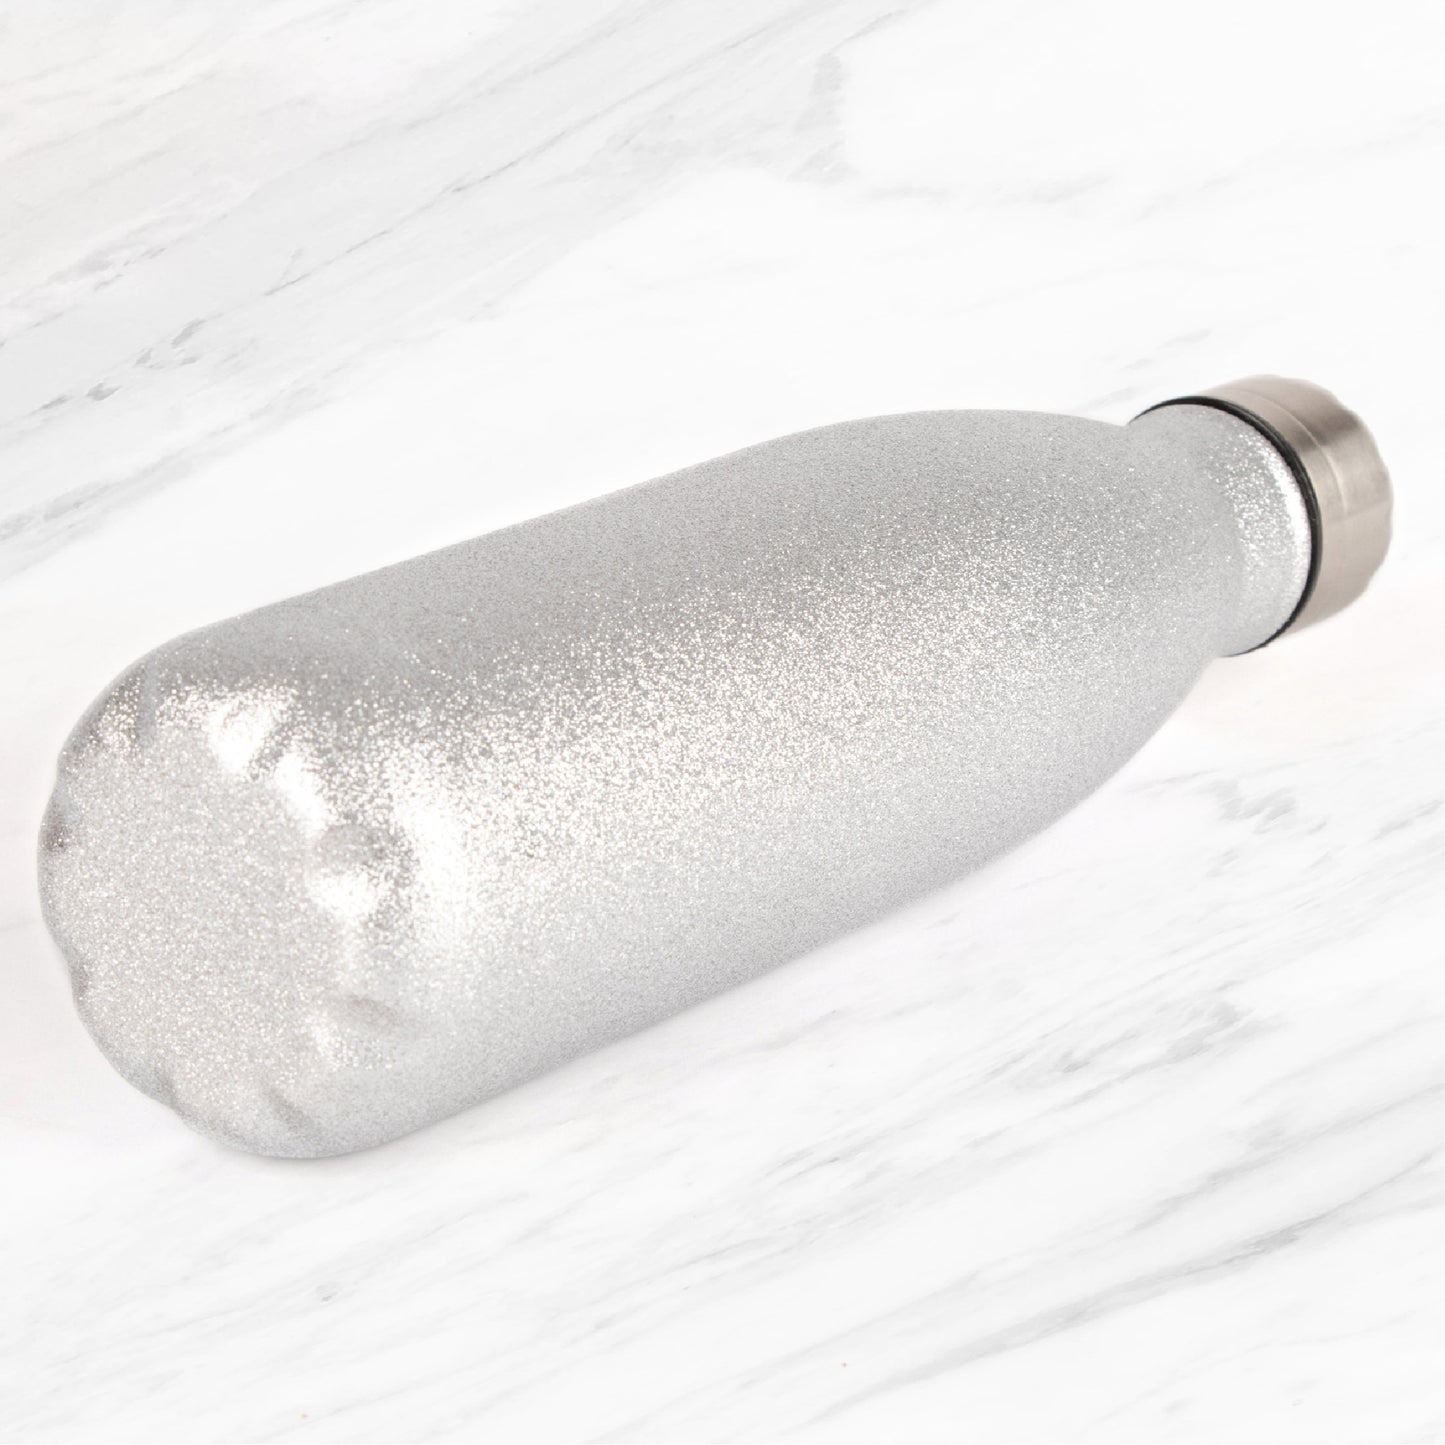 Metal Water Bottle 500ml - Silver Glitter